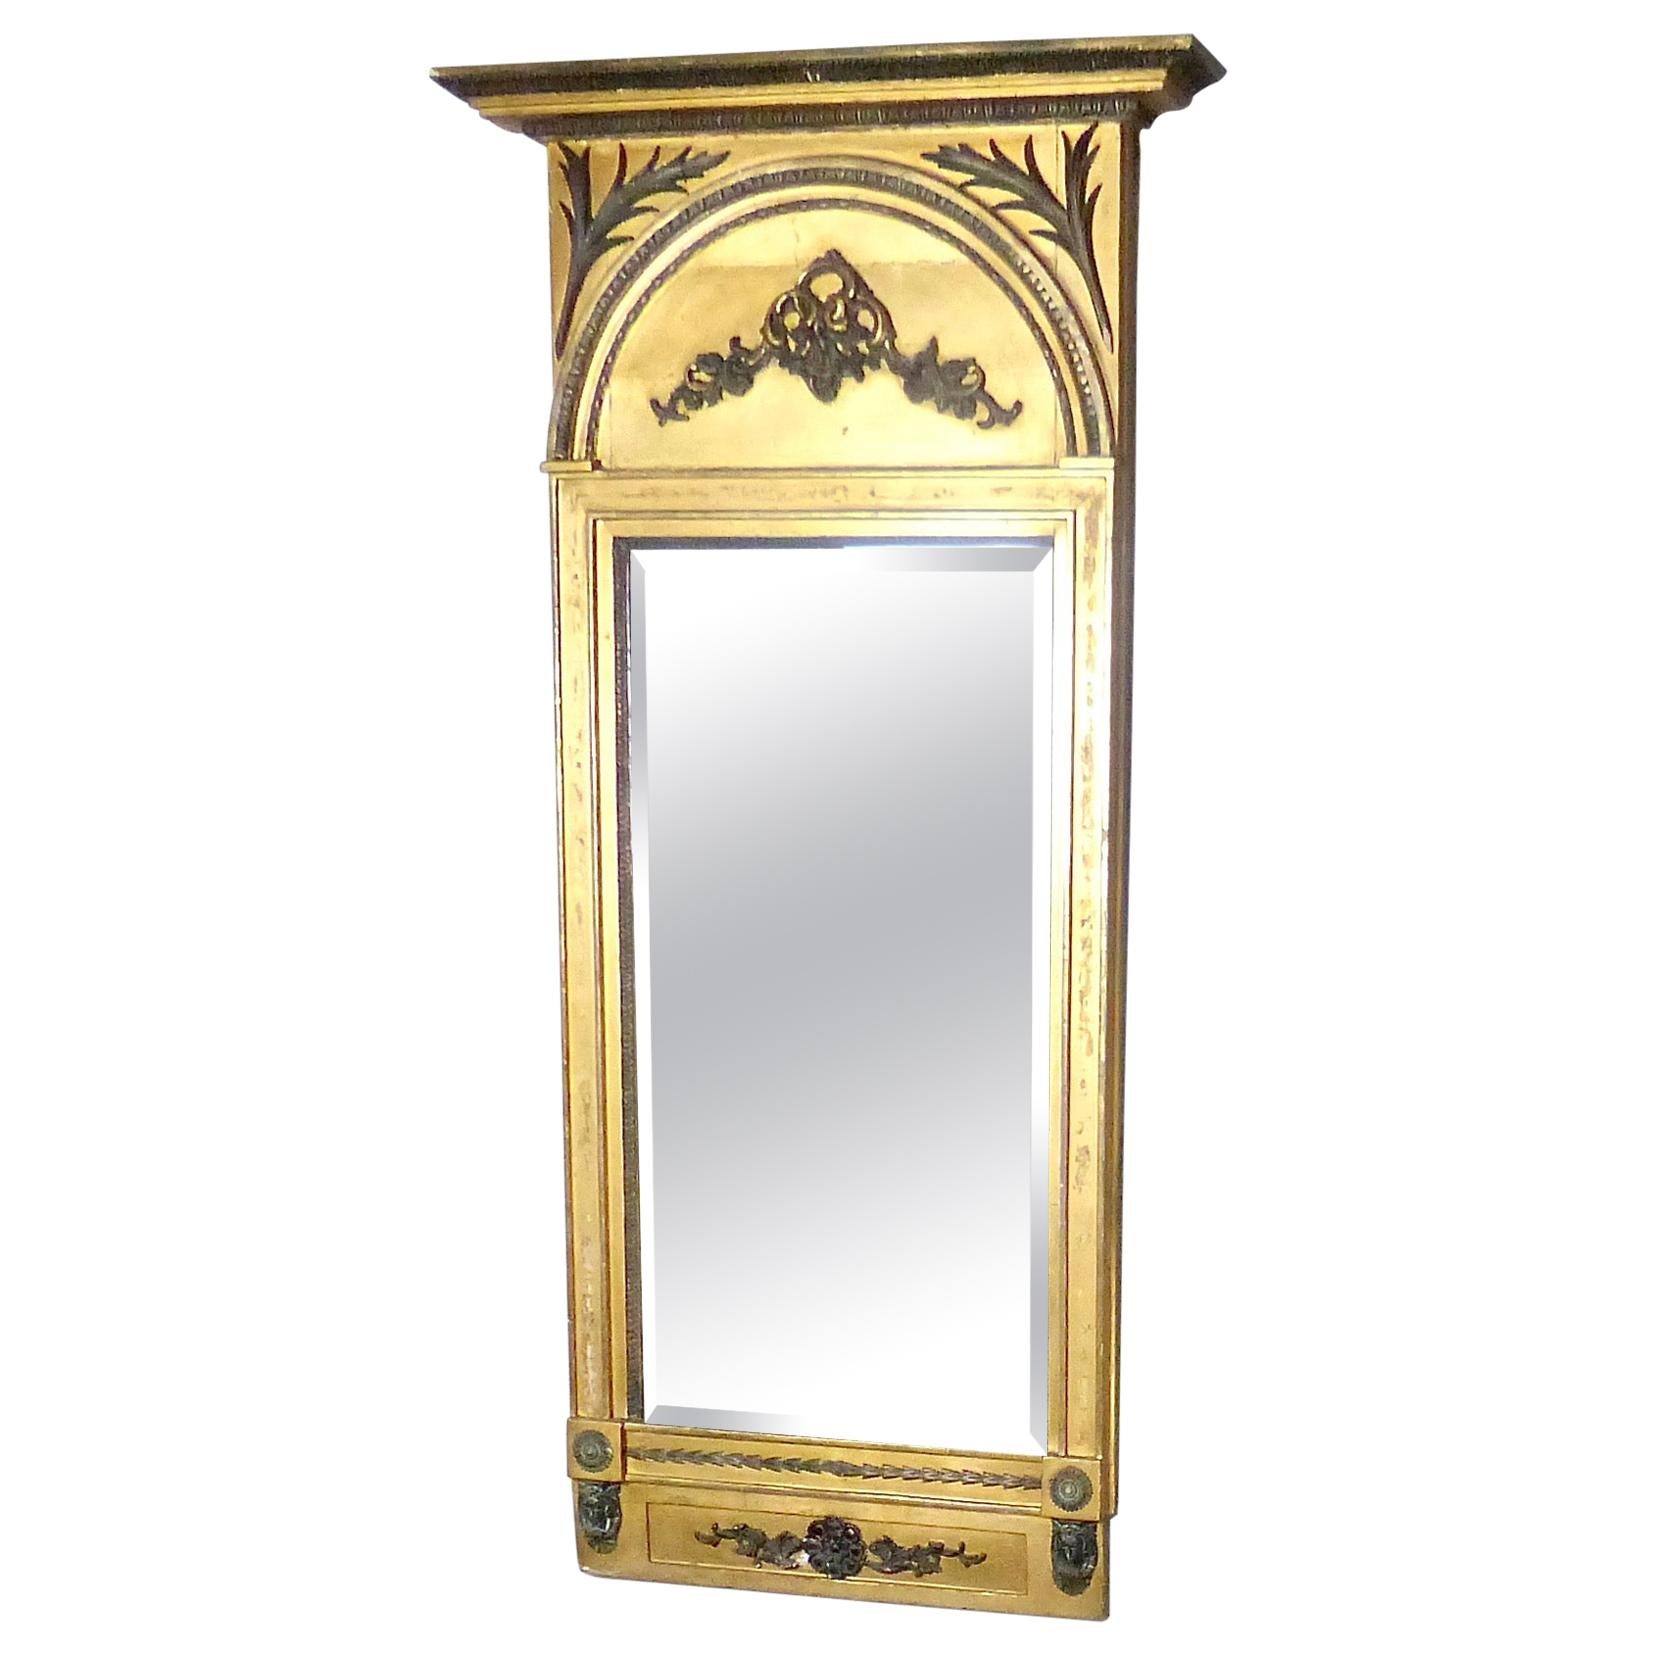 1860s Italian Giltwood Trumeau/Wall/Mantel Mirror